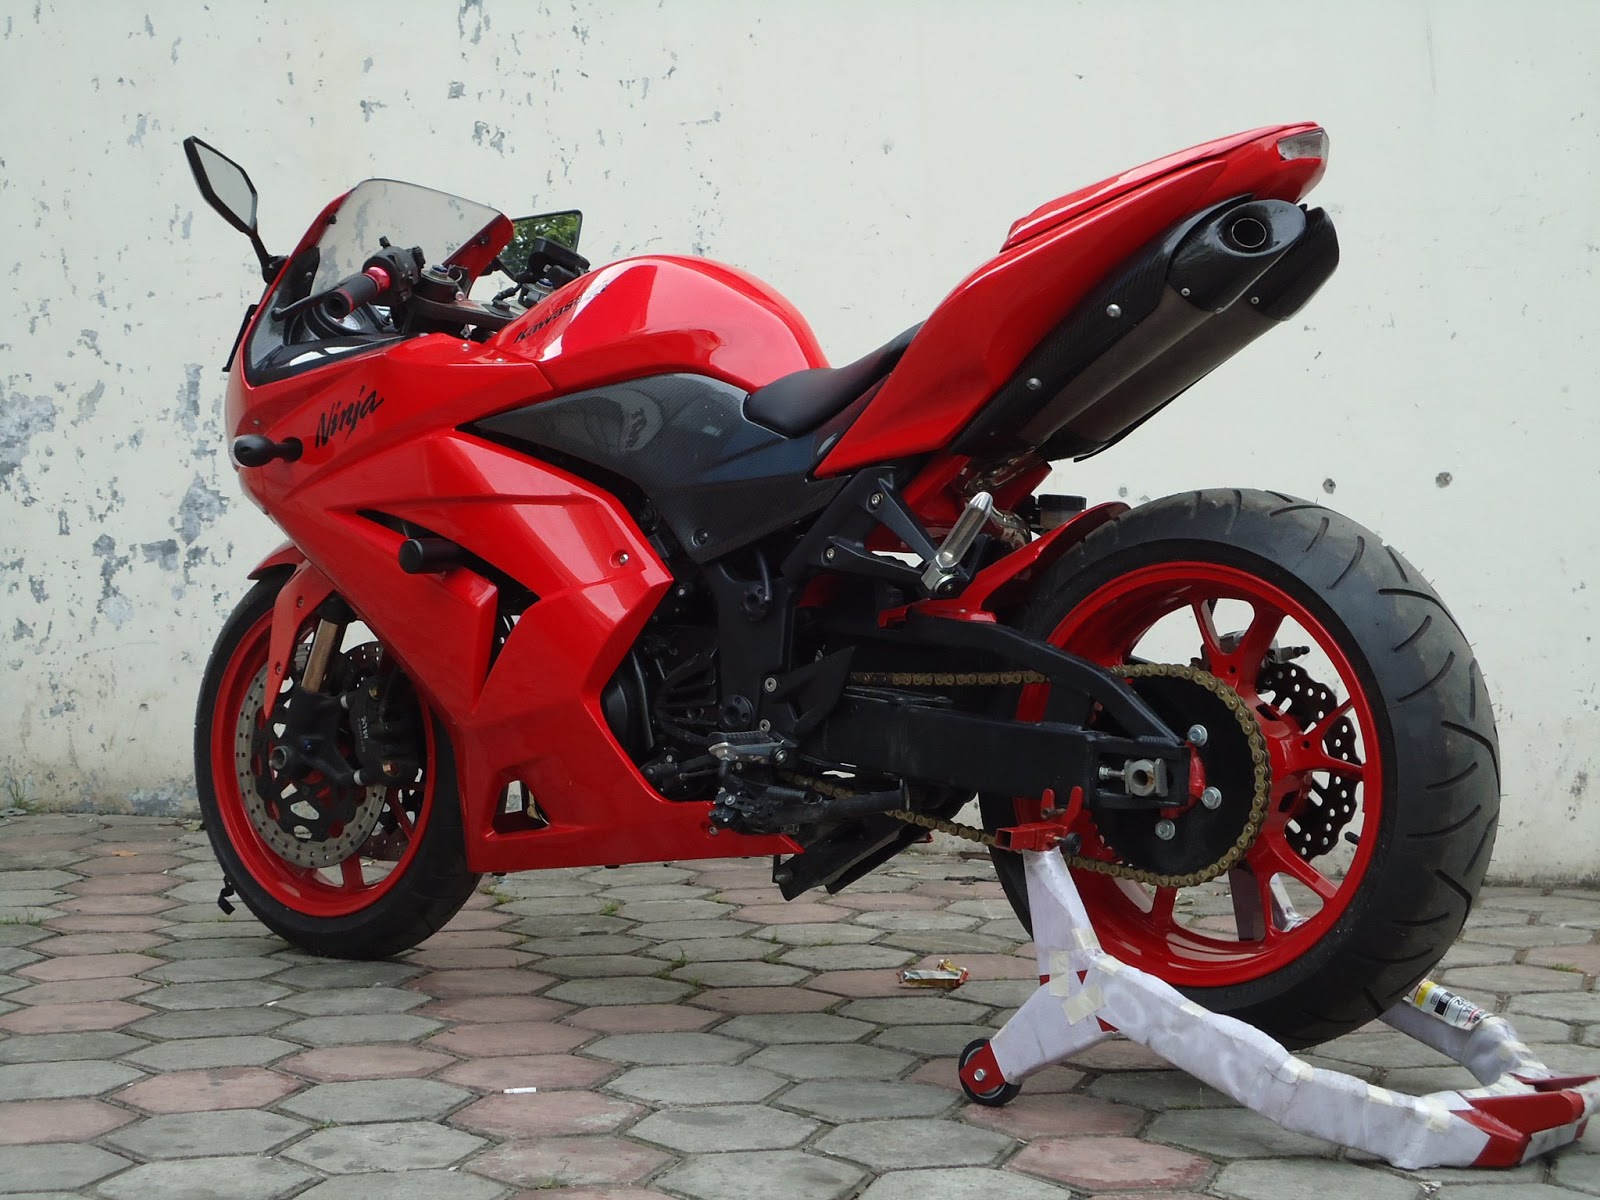 Kumpulan Gambar Sepeda Motor Ninja Merah Terlengkap Codot Modifikasi